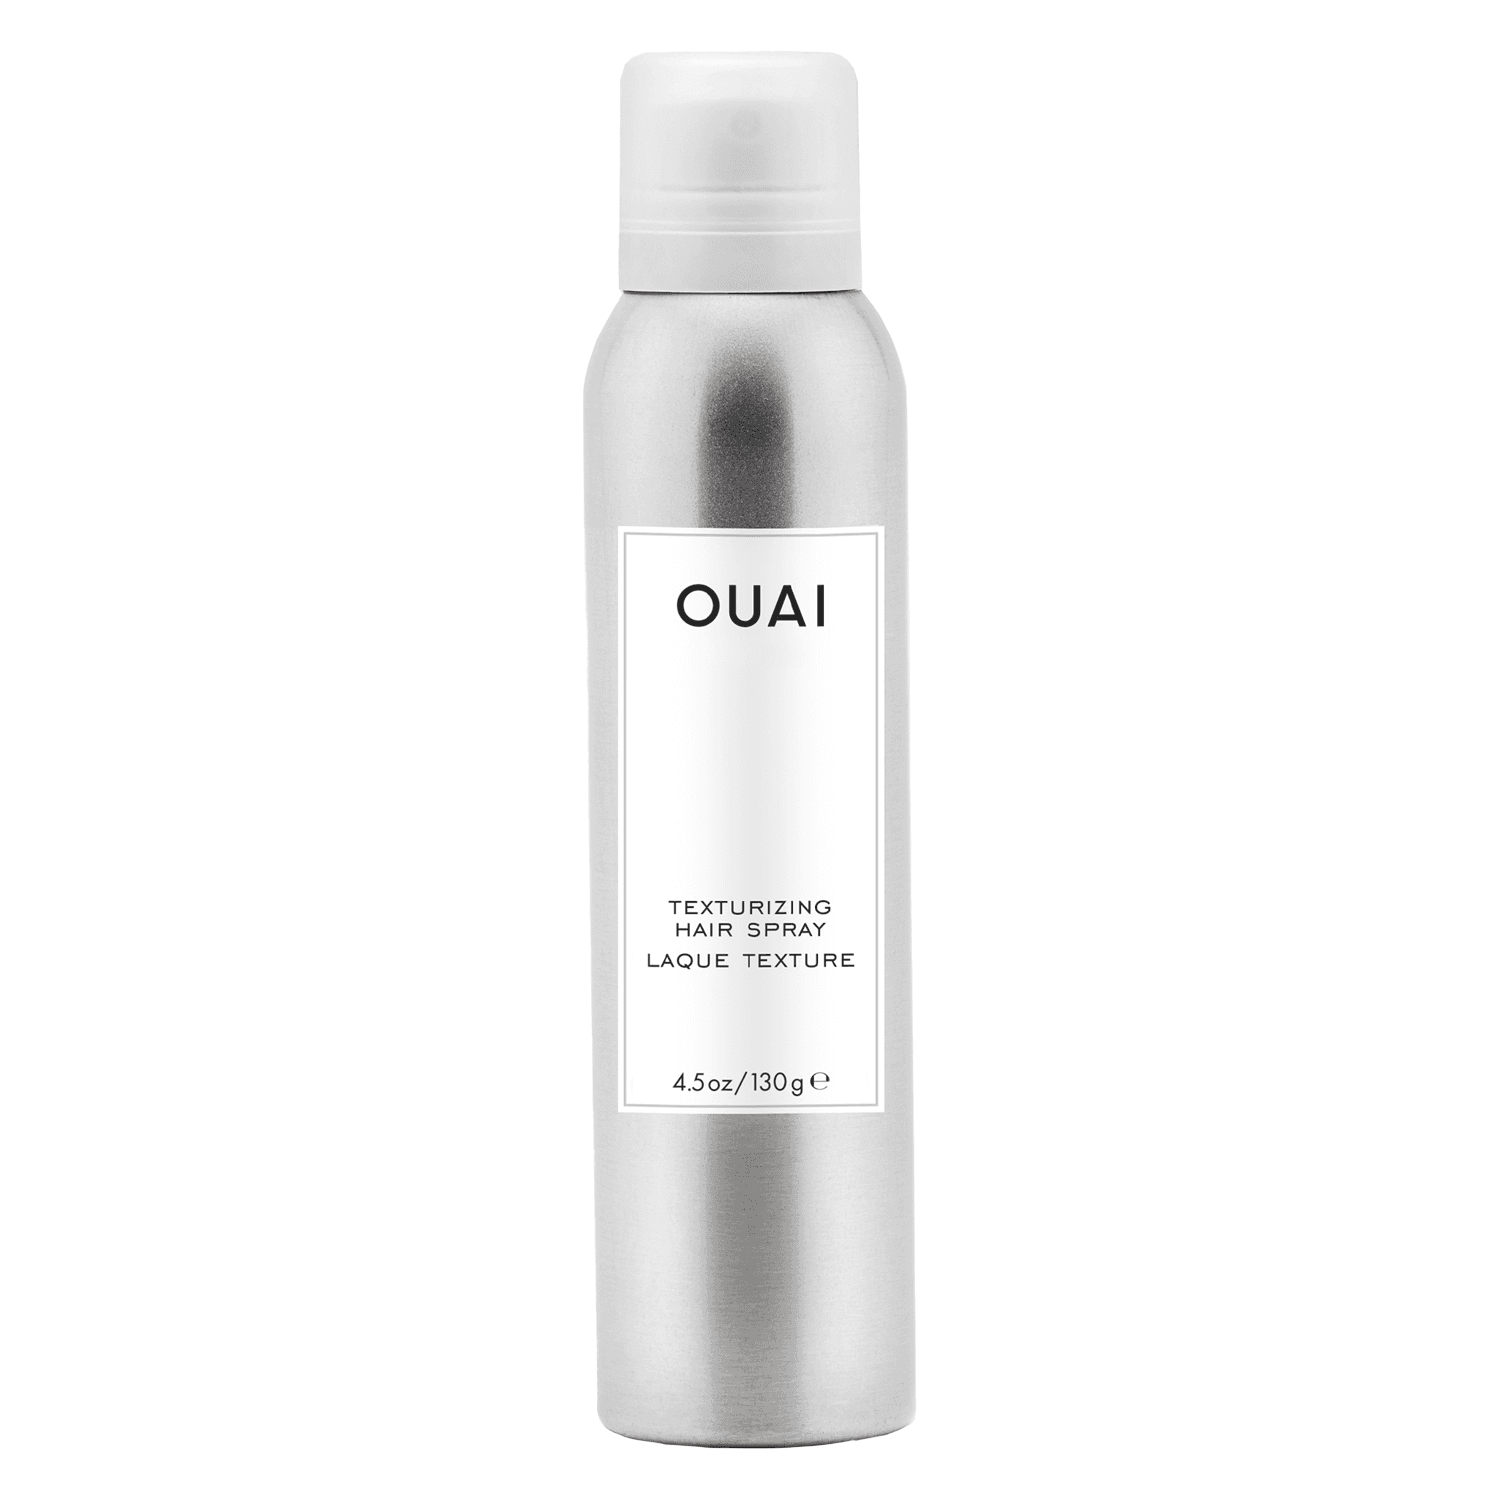 OUAI - Texturizing Hair Spray